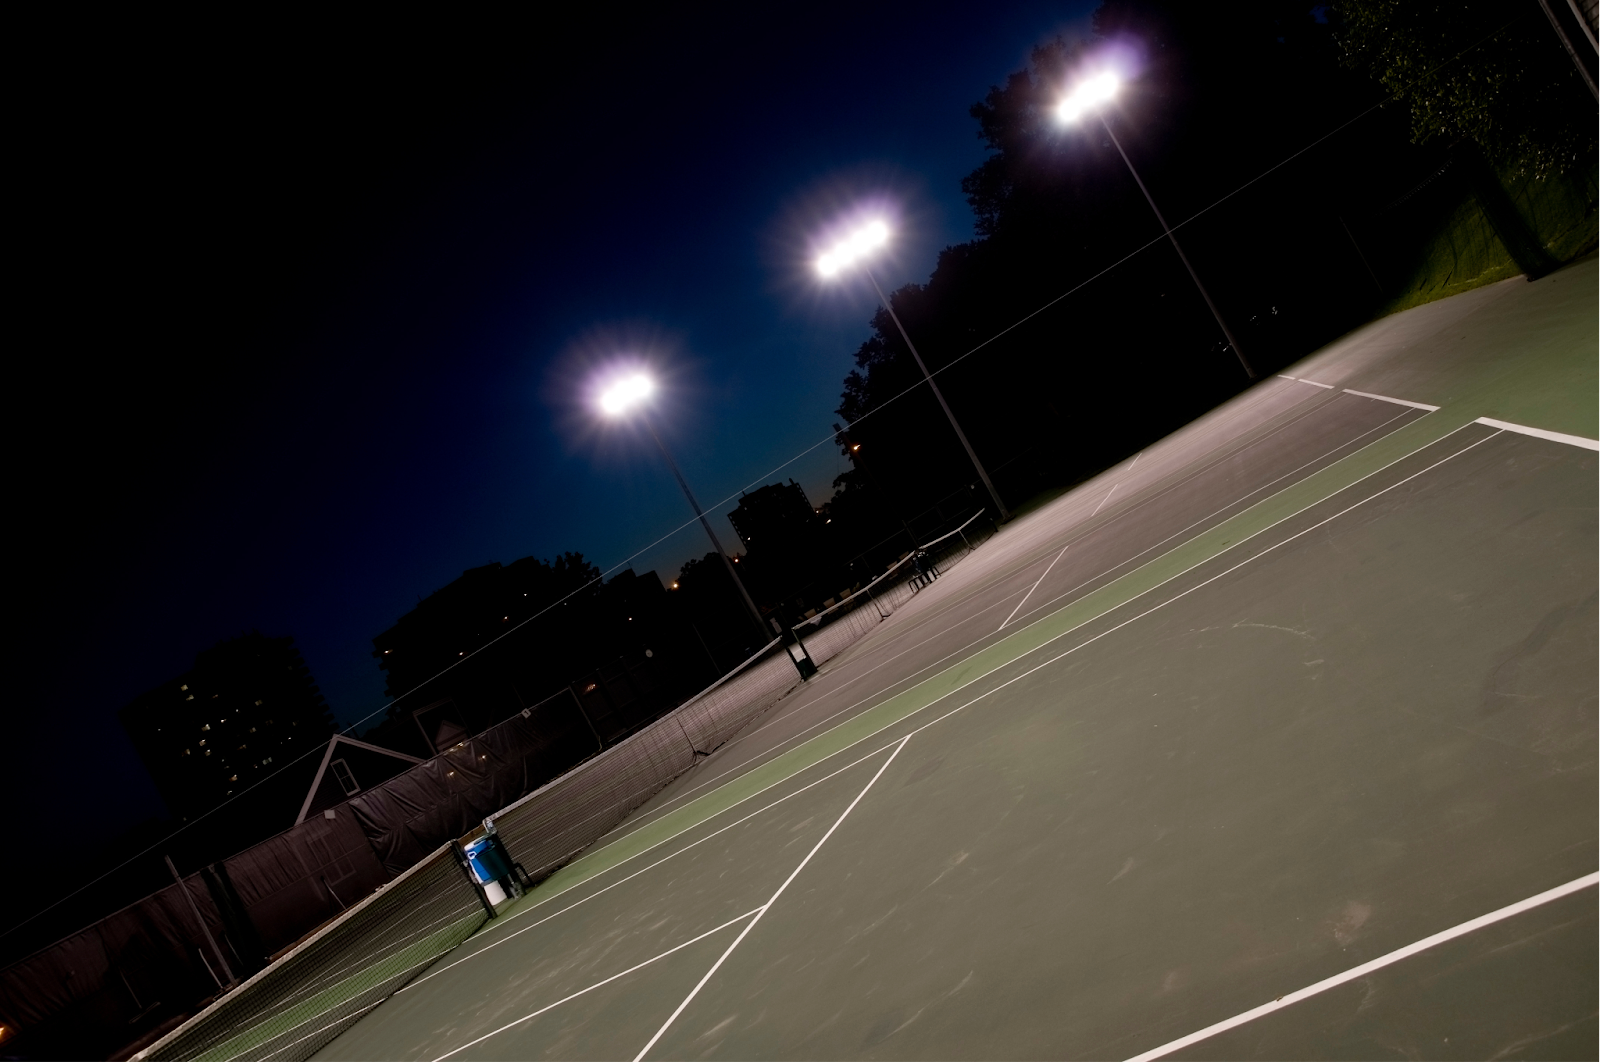 LED Lighting for Tennis Court